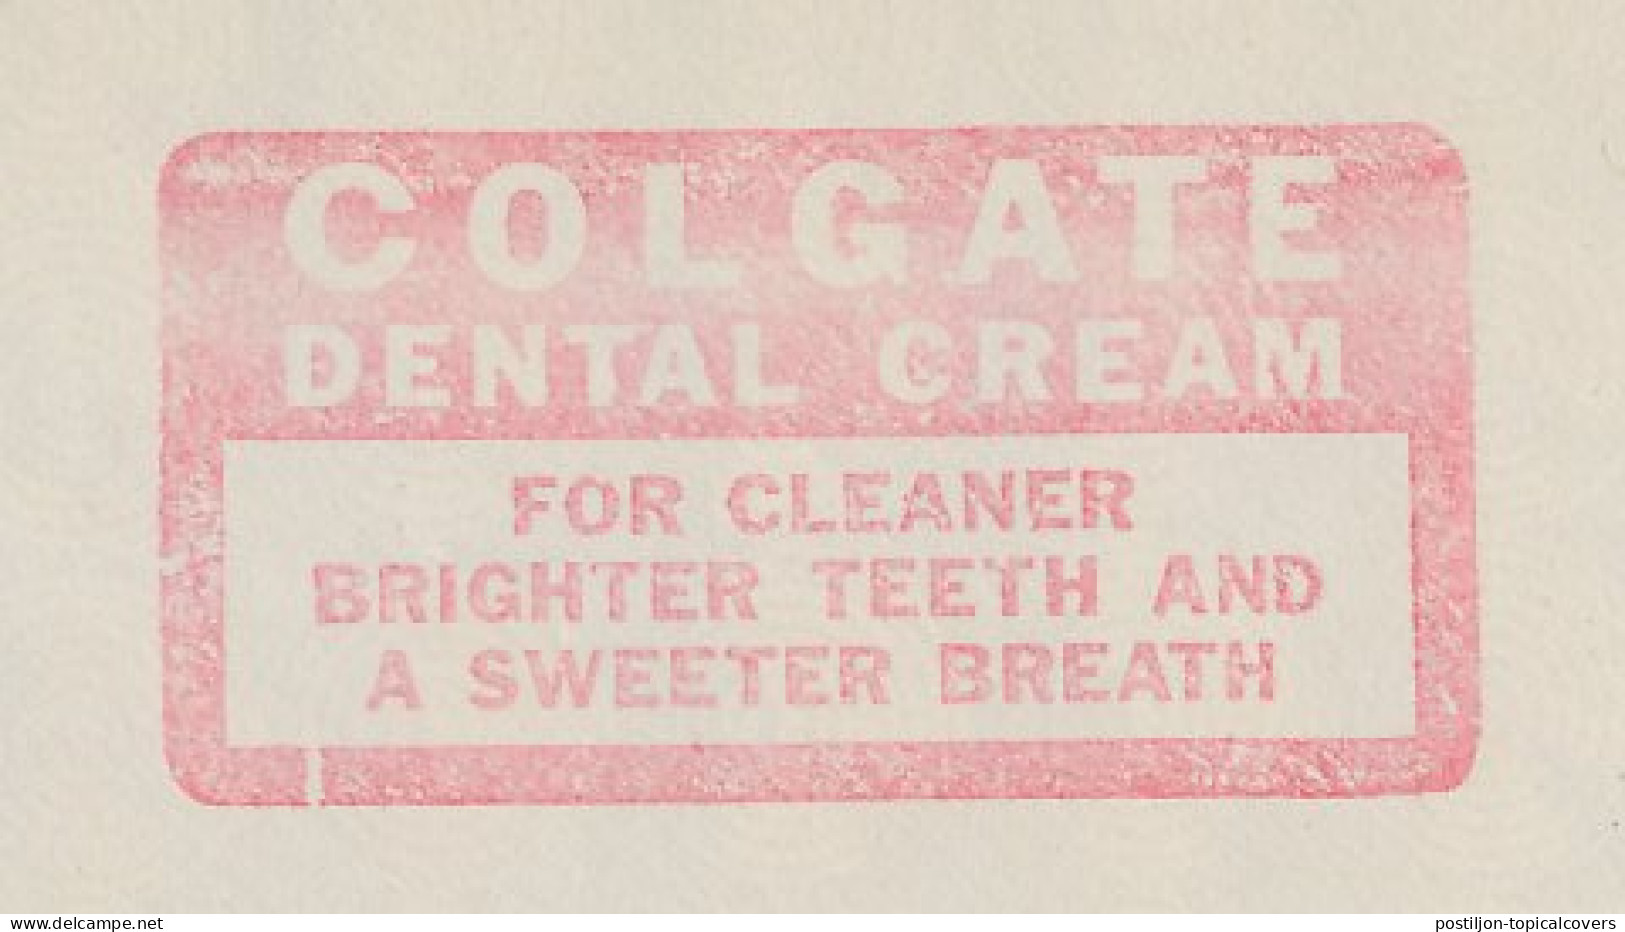 Meter Top Cut USA 1939 Dental Cream - Colgate - Geneeskunde